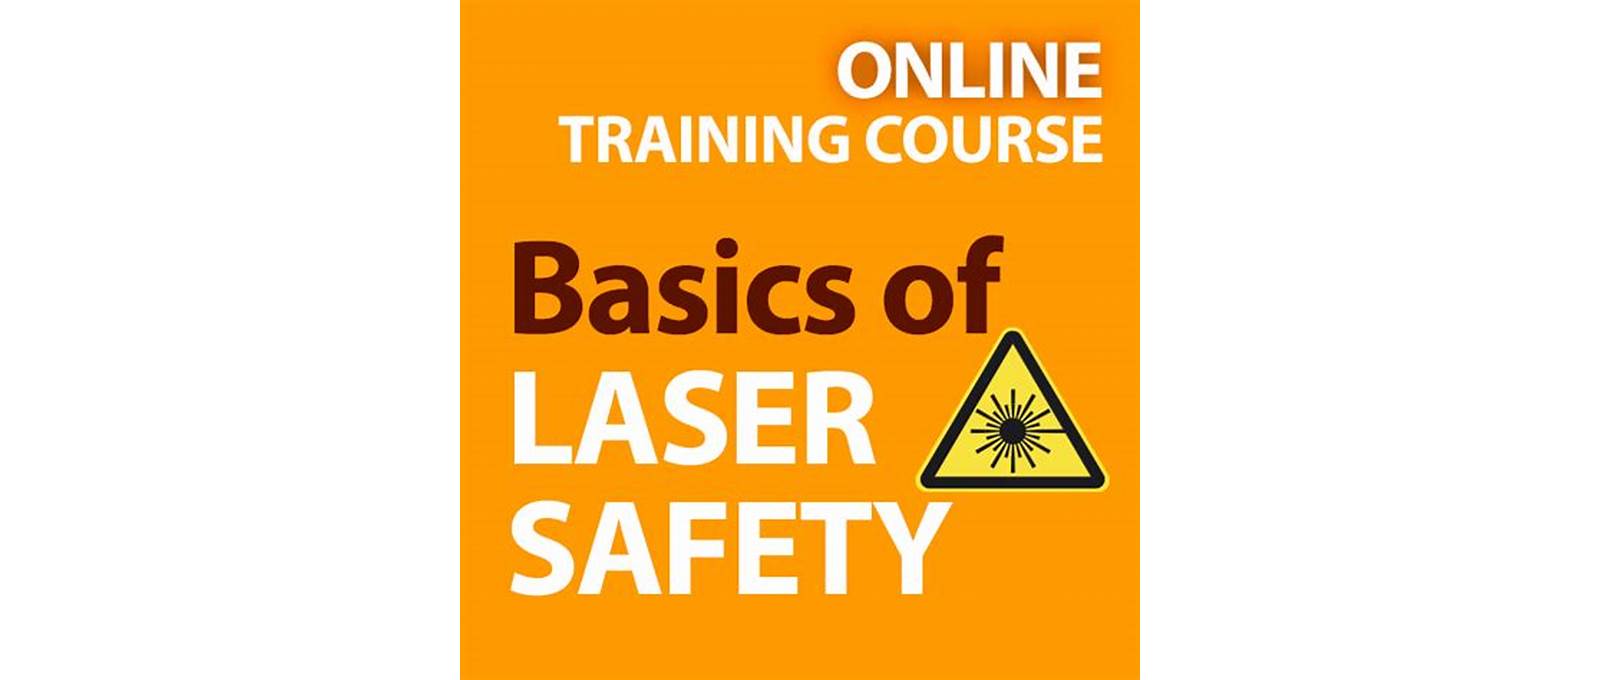 Laser safety program management